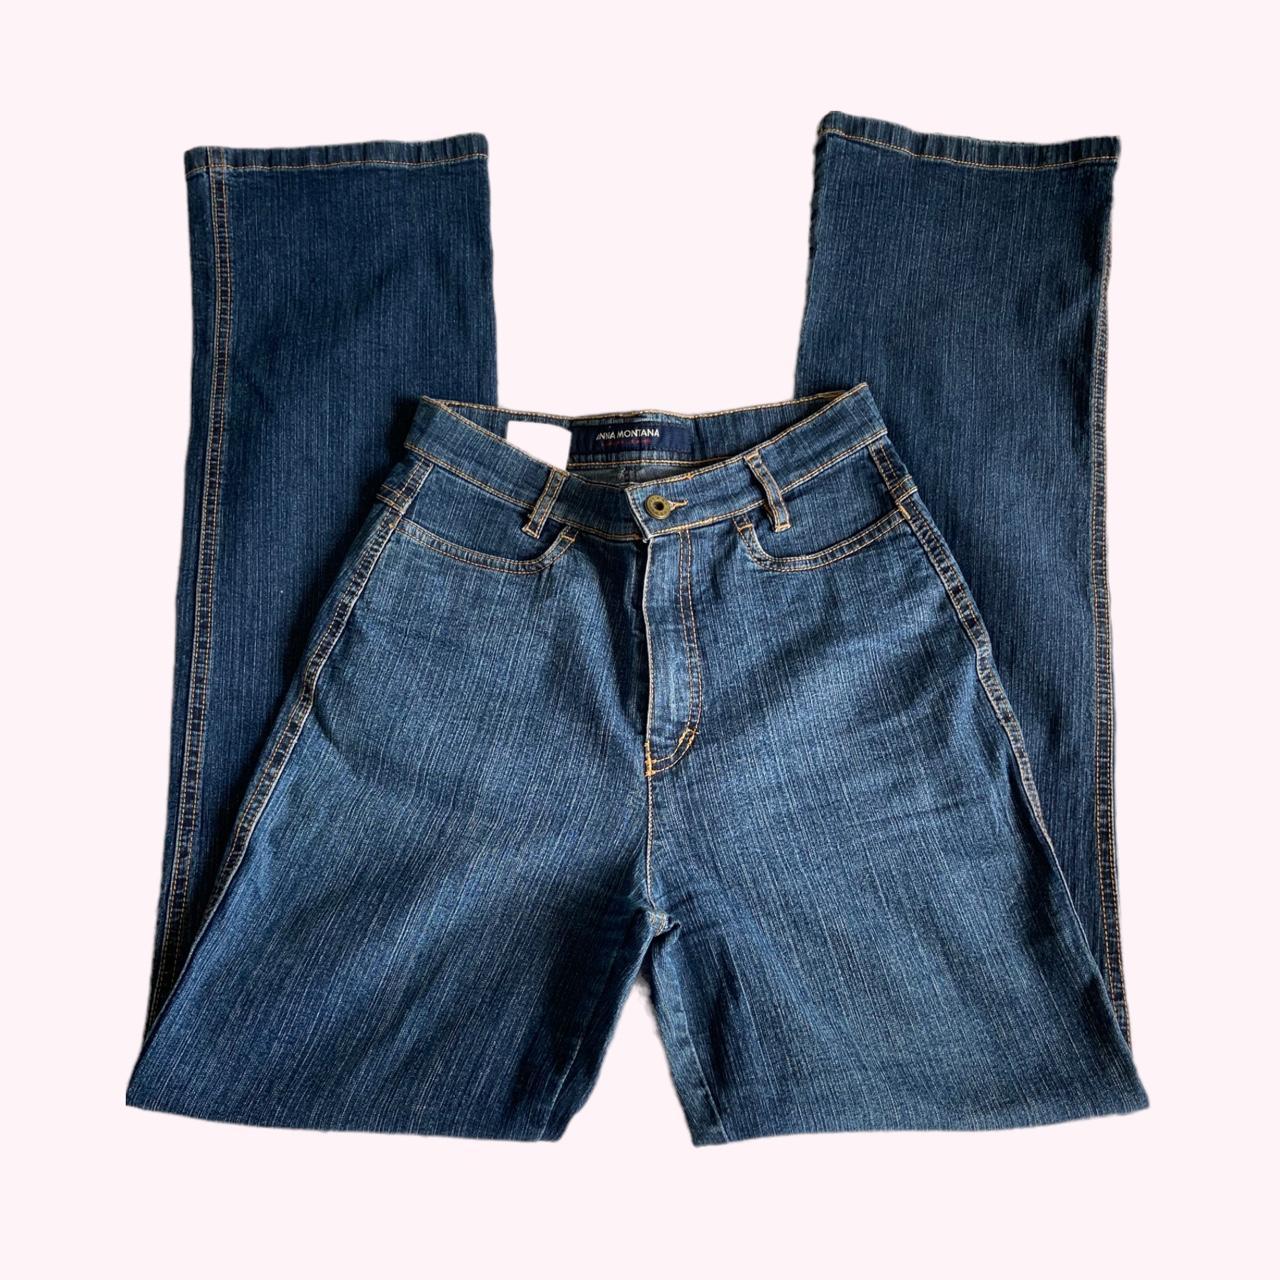 Y2k dark wash flared jeans High waisted // super... - Depop